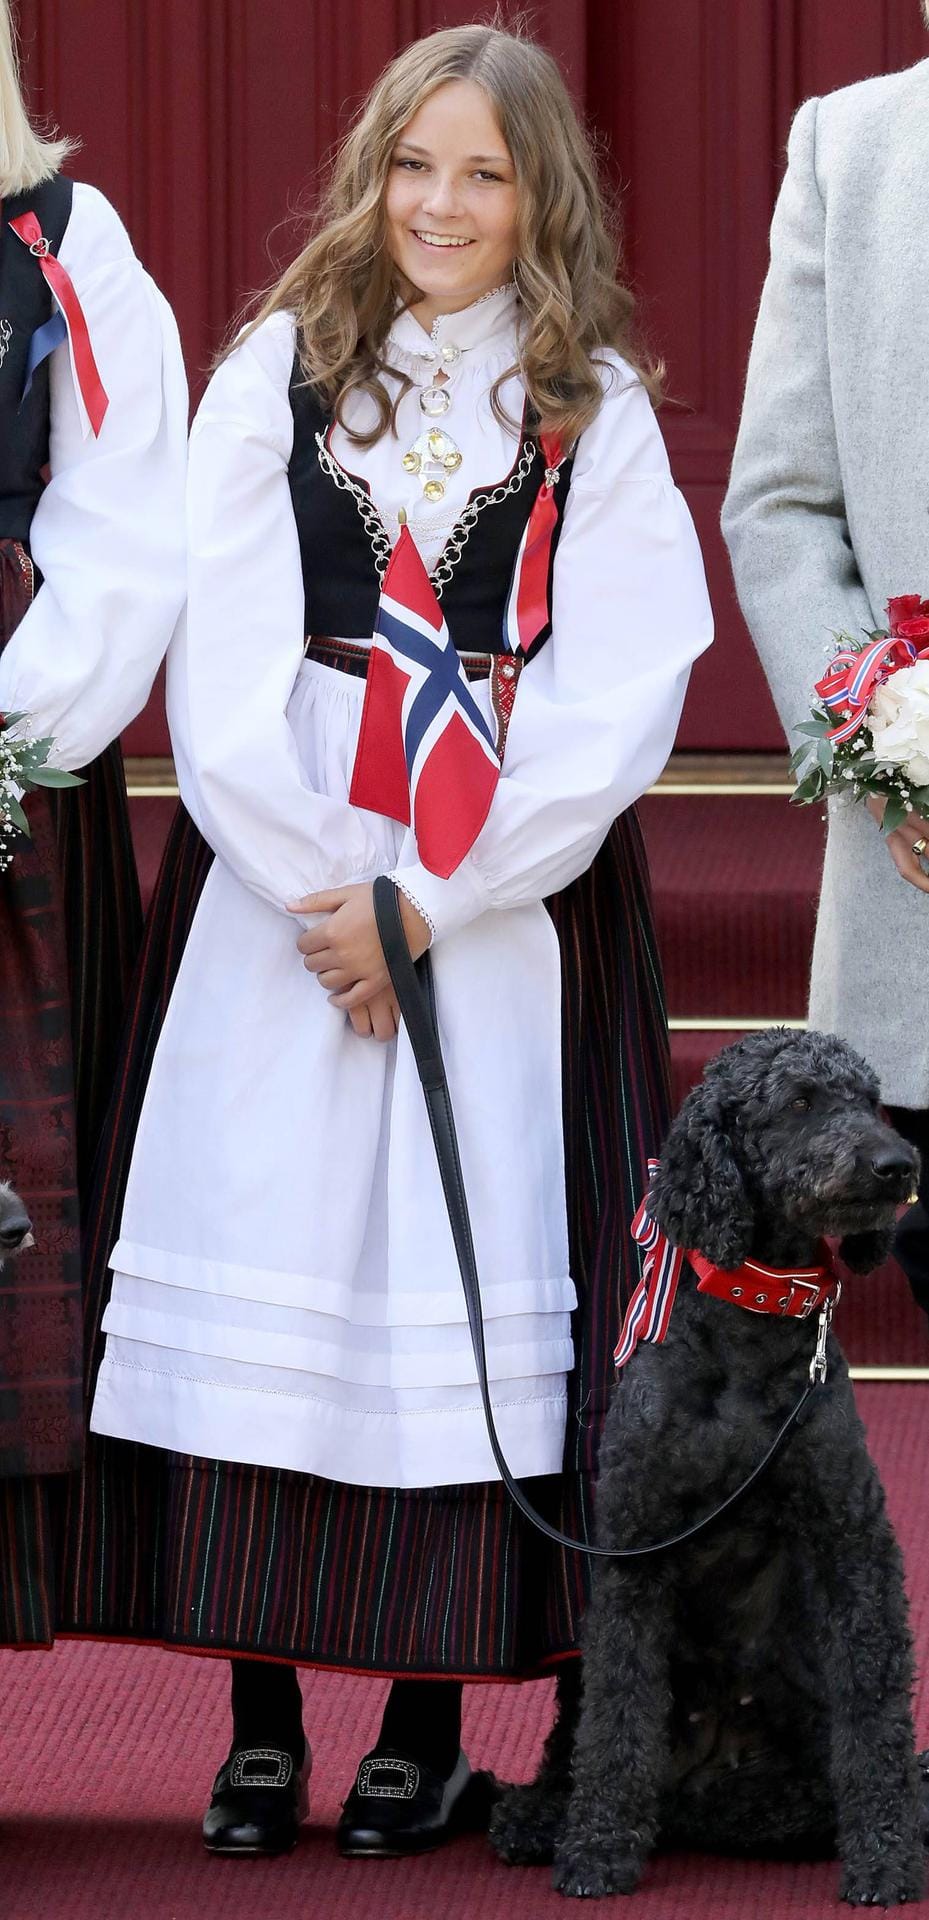 Prinzessin Ingrid Alexandra von Norwegen: Die Tochter von Kronprinz Haakon und Kronprinzessin Mette-Marit erblickte am 21. Januar 2004 das Licht der Welt. Sie steht auf Platz zwei der norwegischen Thronfolge hinter ihrem Vater.